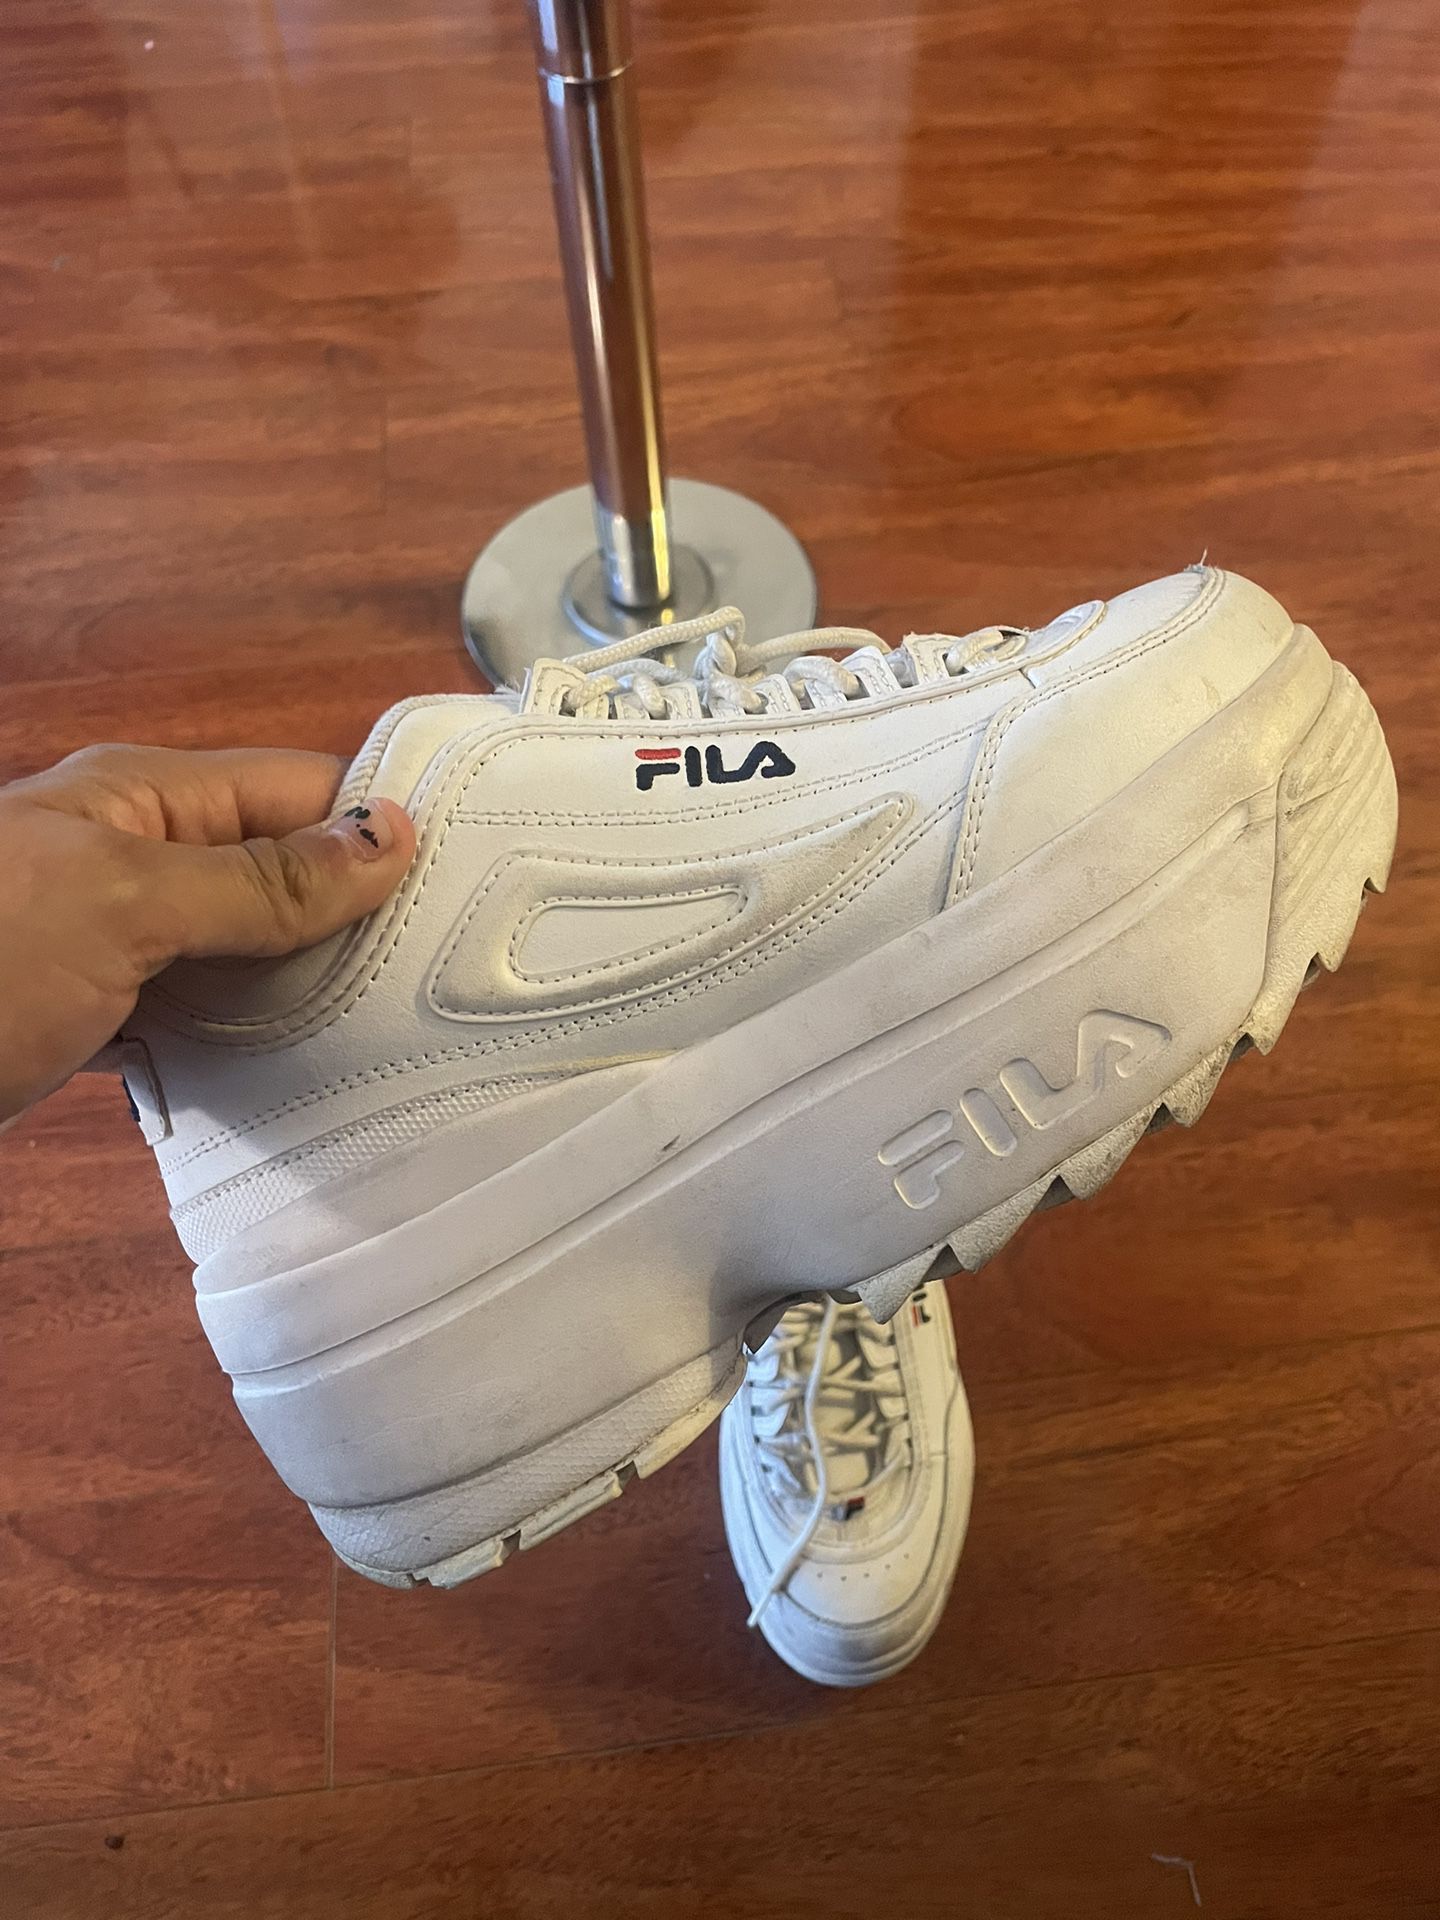 Fila Disruptor II Wedge Sneakers - 8.5 